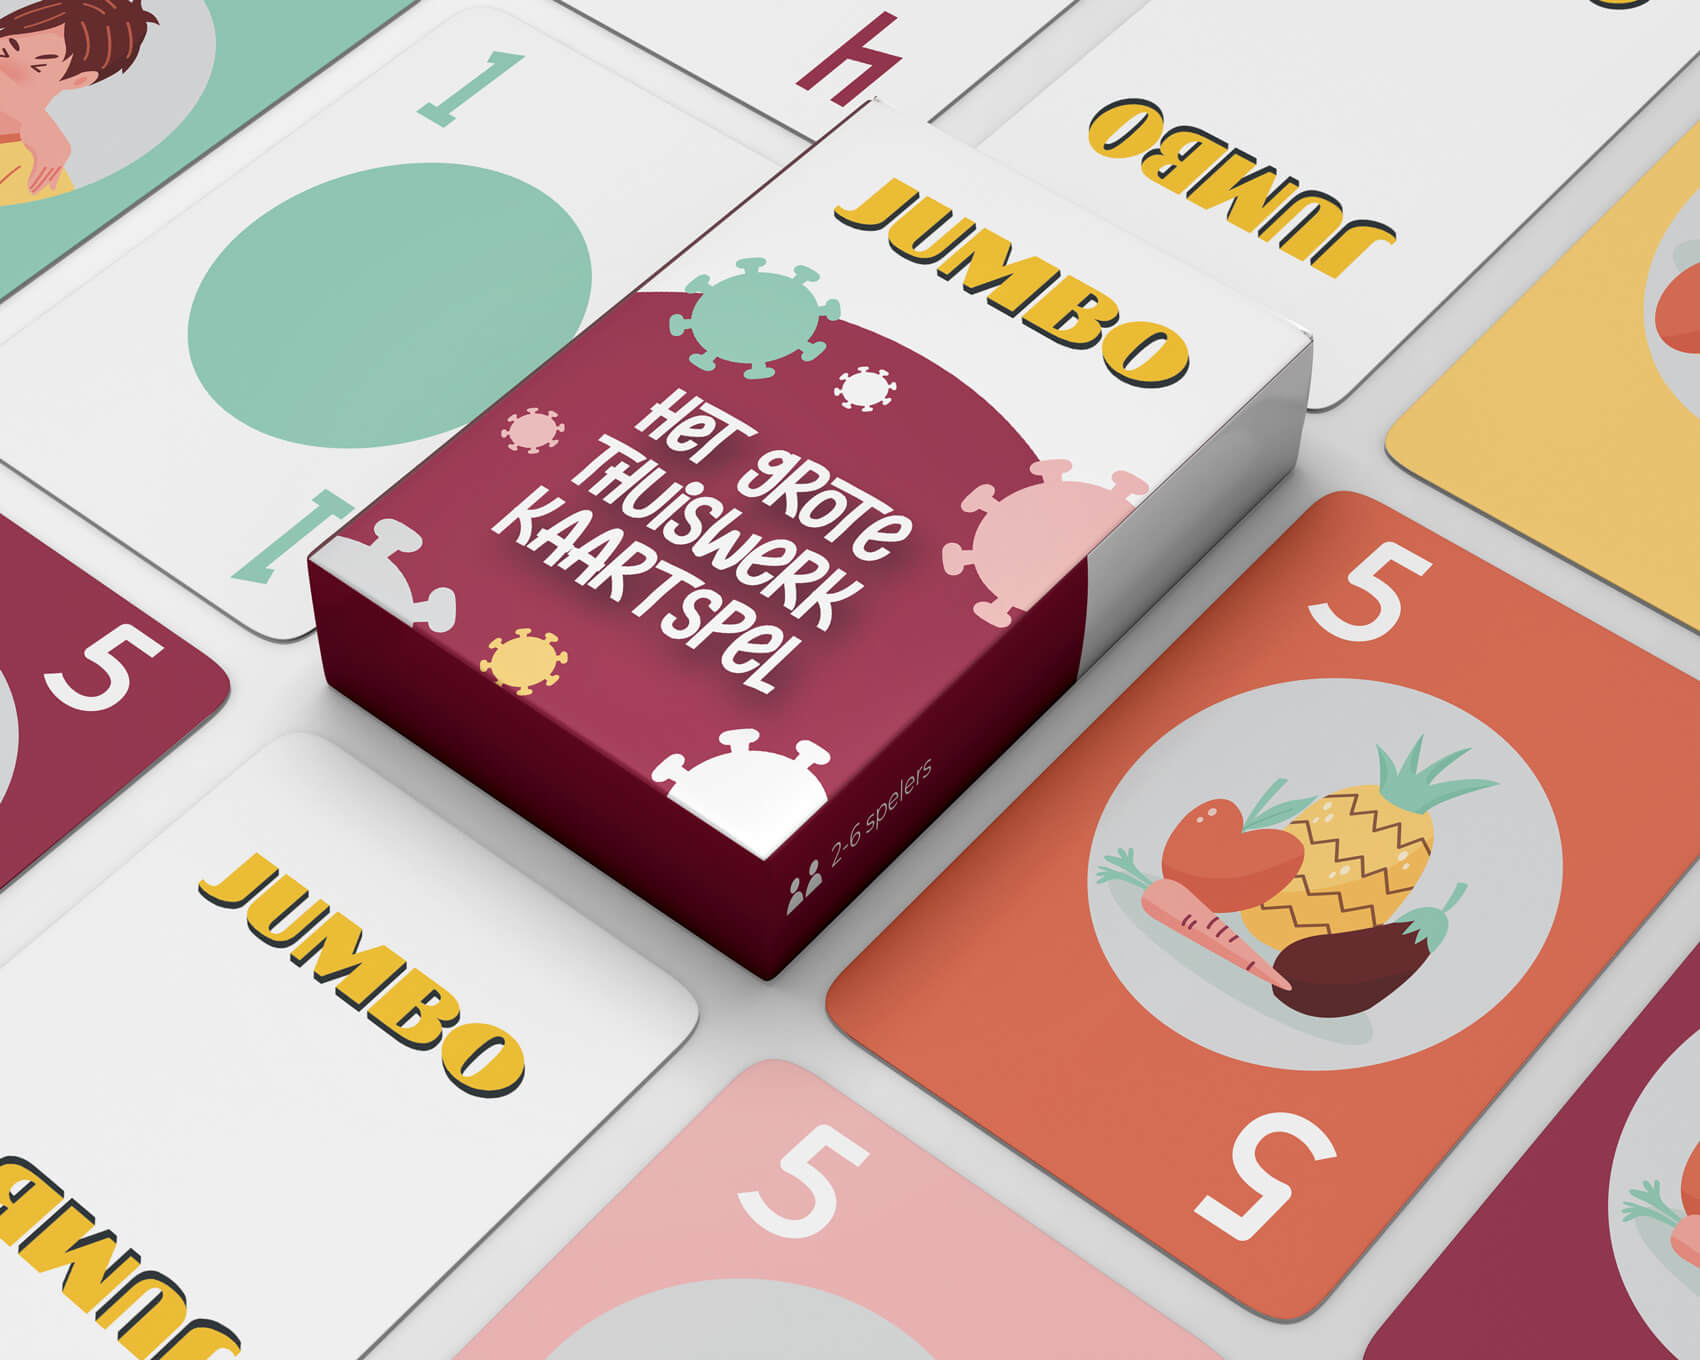 spade charme toewijzing Thuiswerk spel bedrukken [Uniek spel!] - Full-color met eigen design!